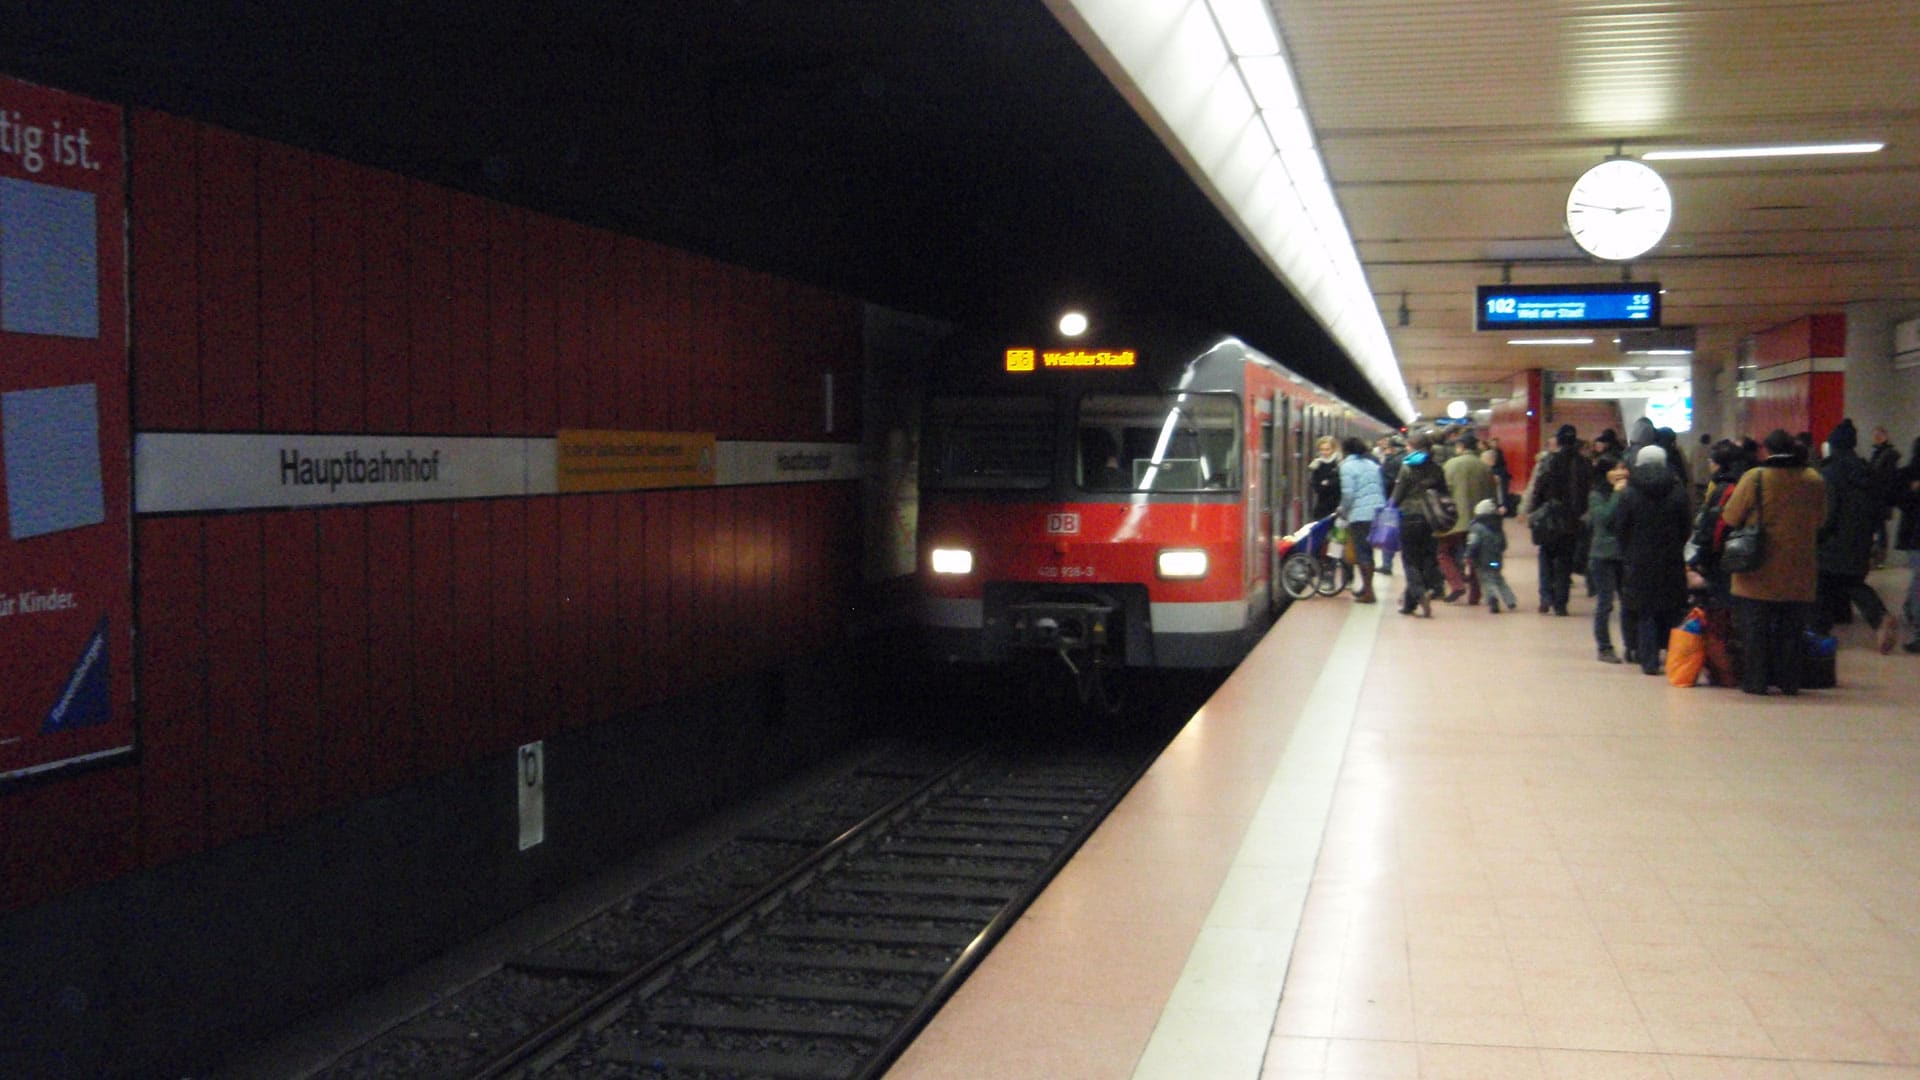 In den S-Bahnen des Stuttgarter Nahverkehrs sorgen Bibelsprüche für eine politische Auseinandersetzung